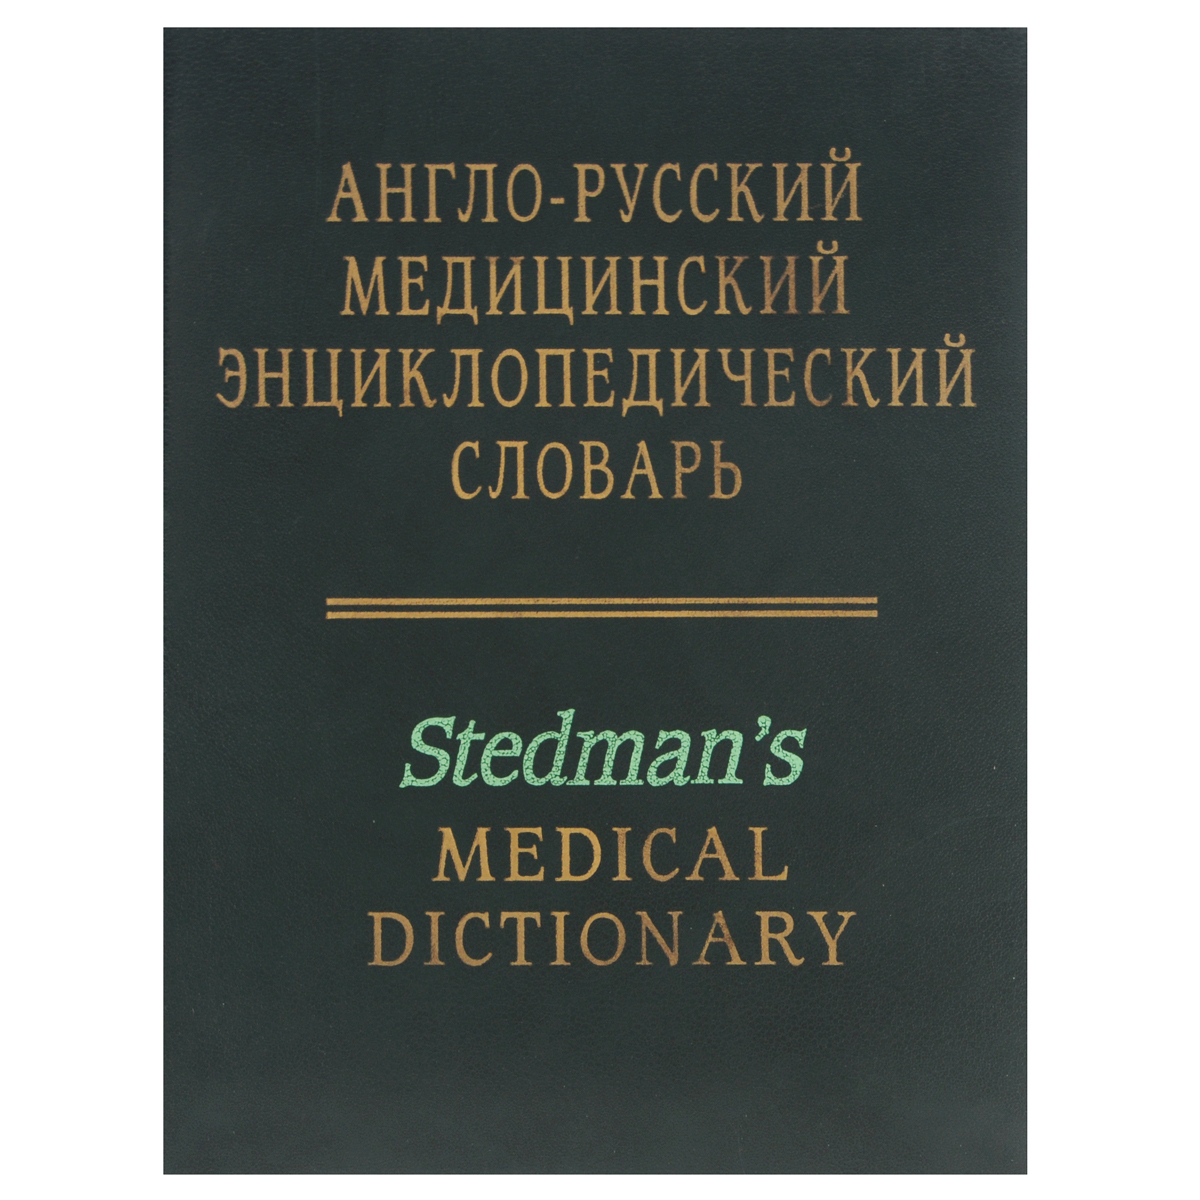 Англо-русский медицинский энциклопедический словарь / Stedman's Medical Dictionary